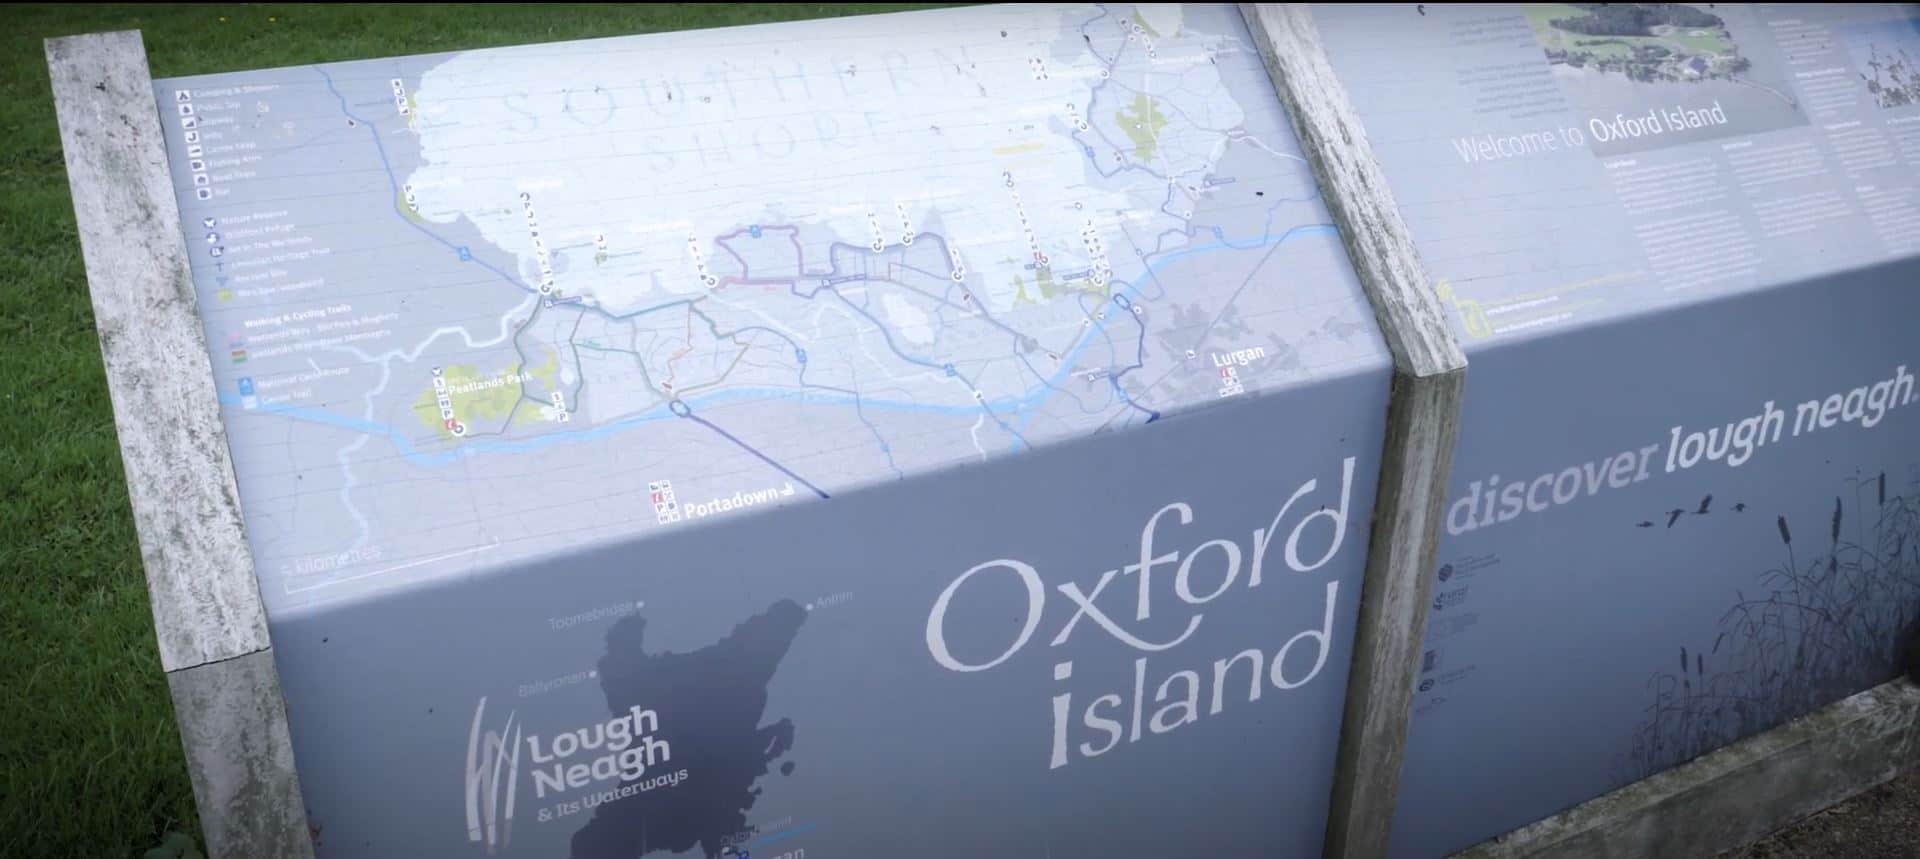 Oxford Island